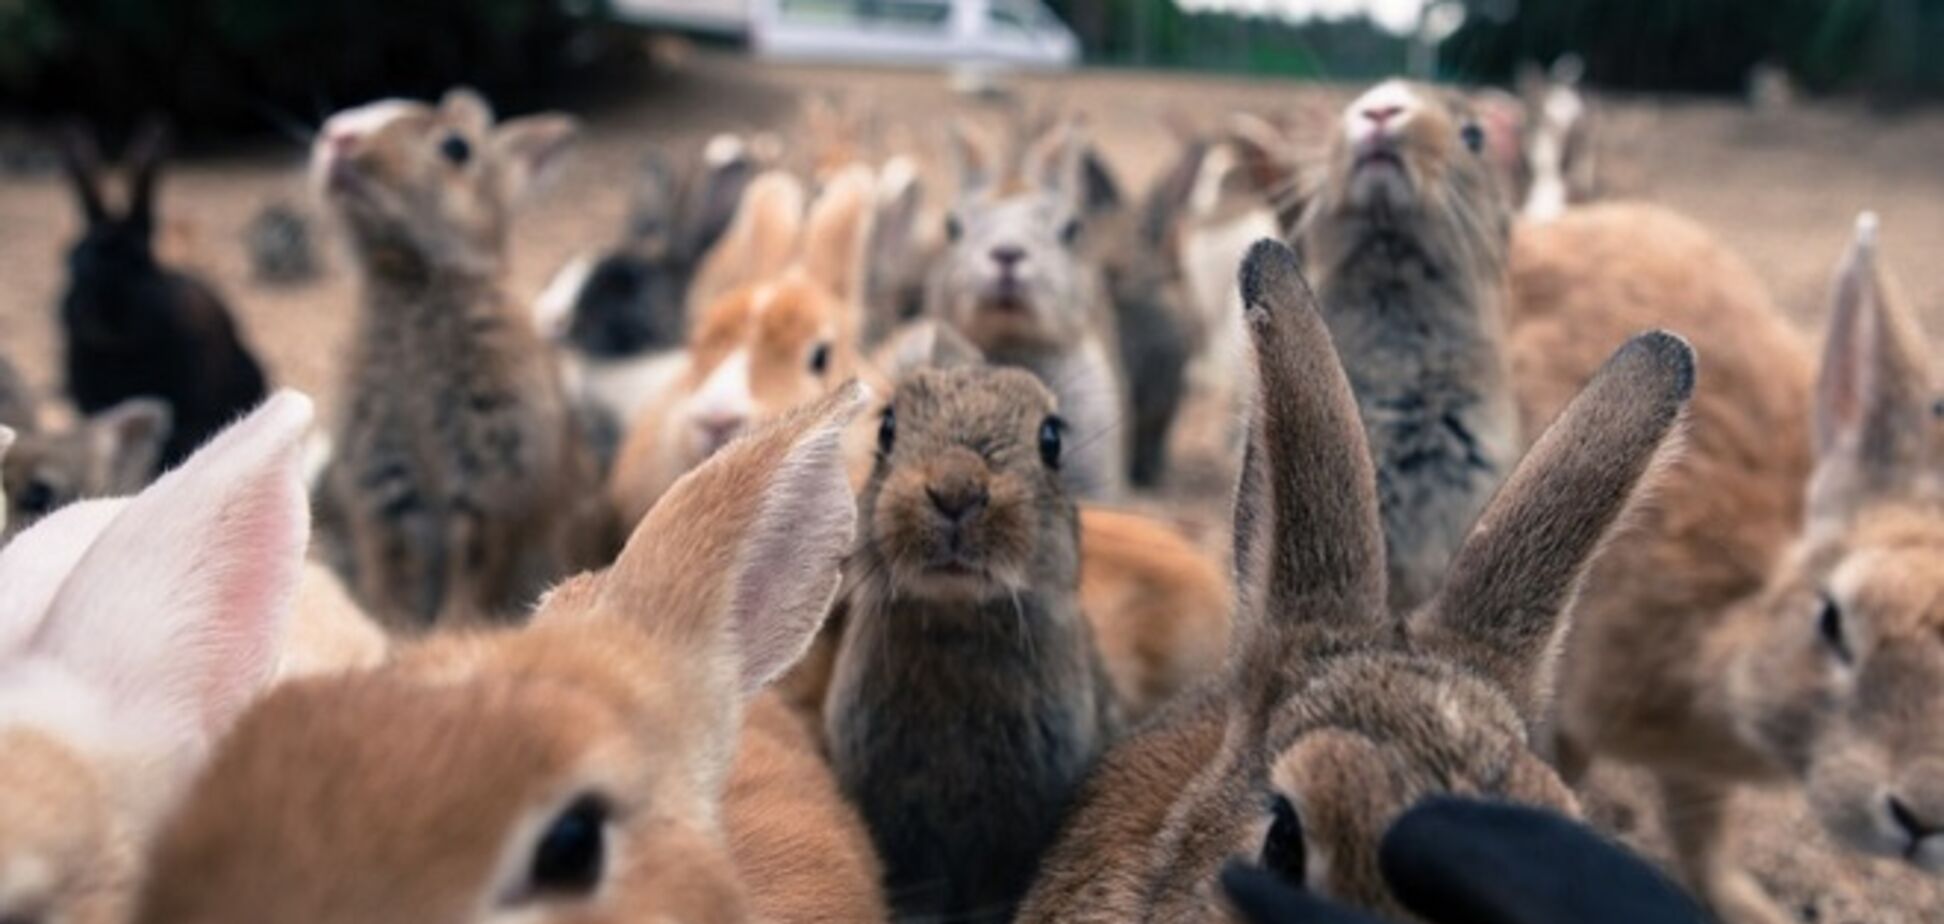 Сверхсекретная военная база превратилась в Остров кроликов: опубликованы фото